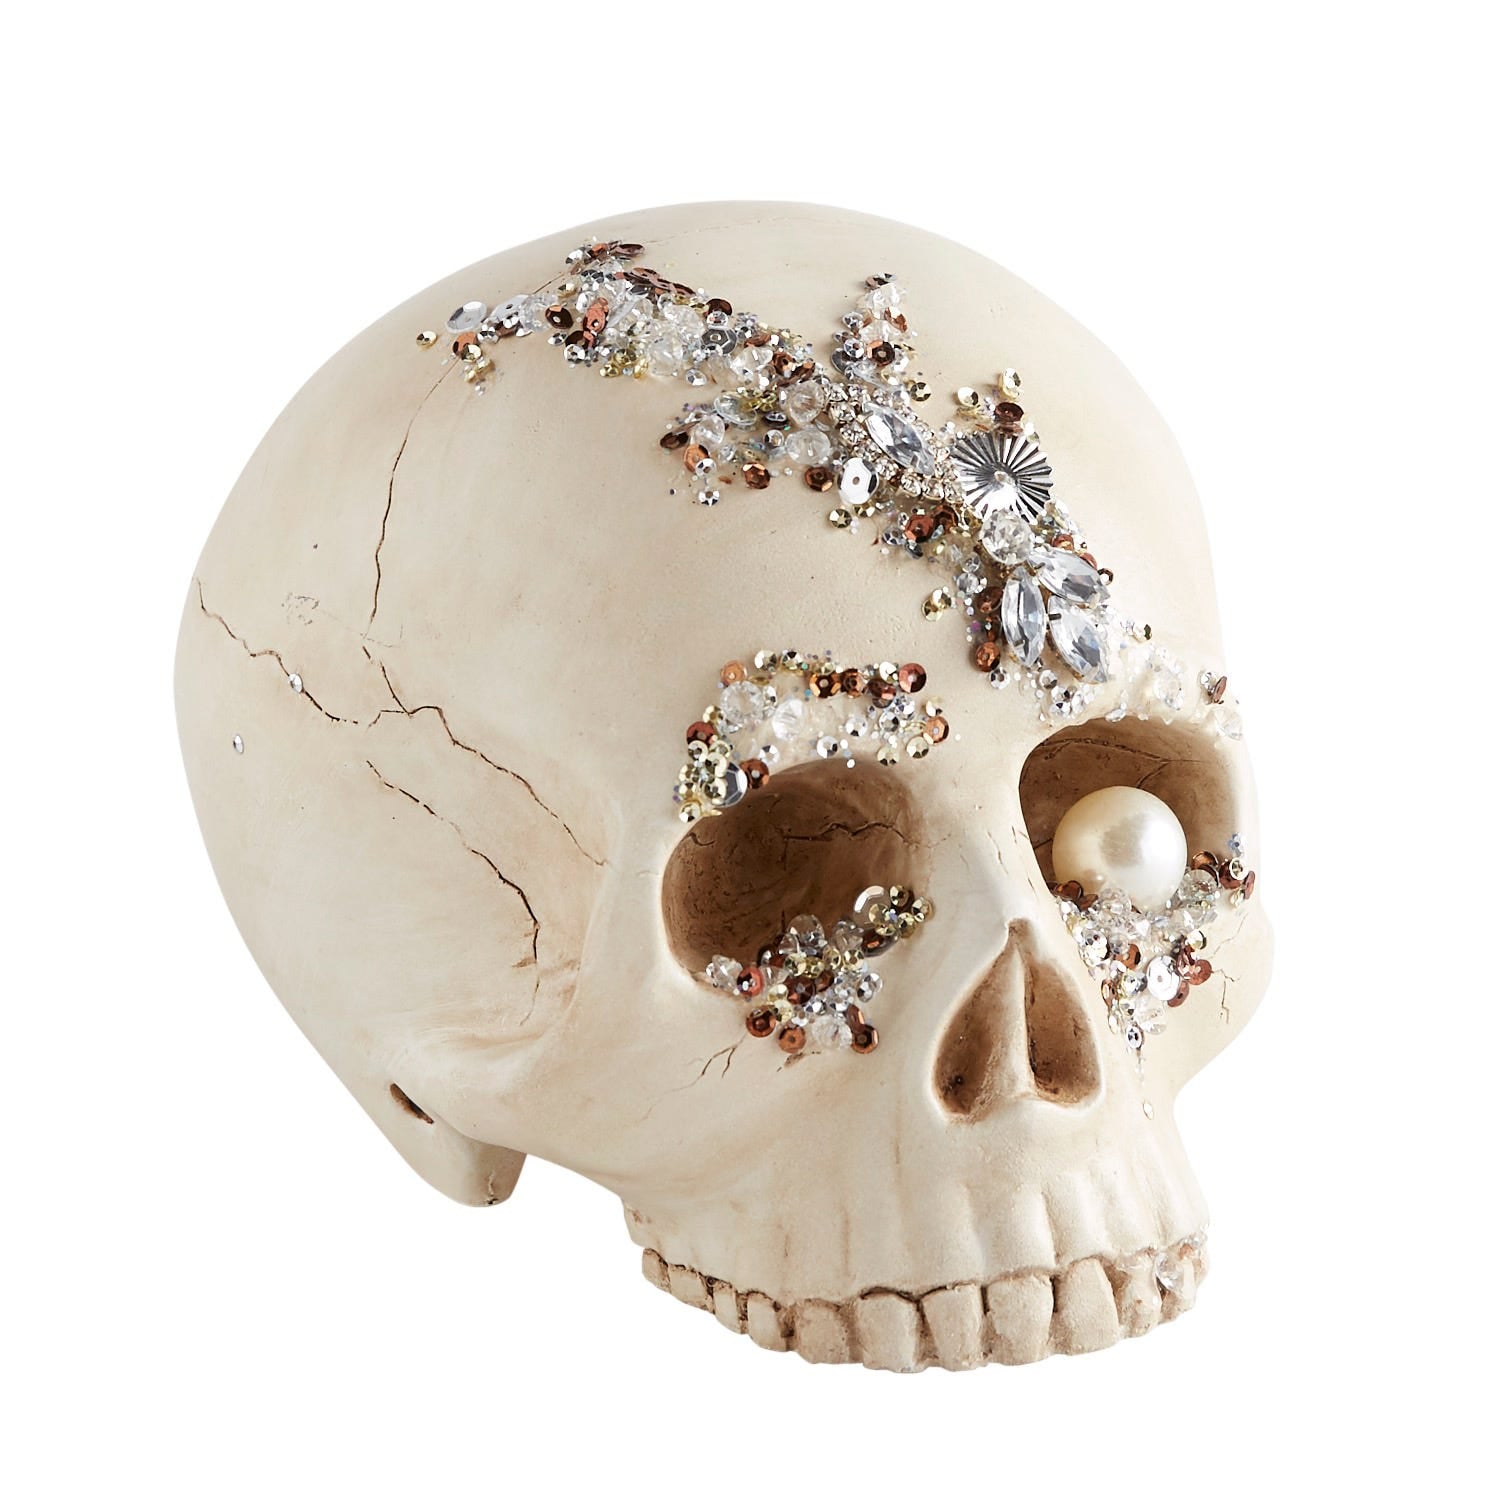 Bejeweled Skull Halloween Decor | Pier 1 Released Its Halloween ...